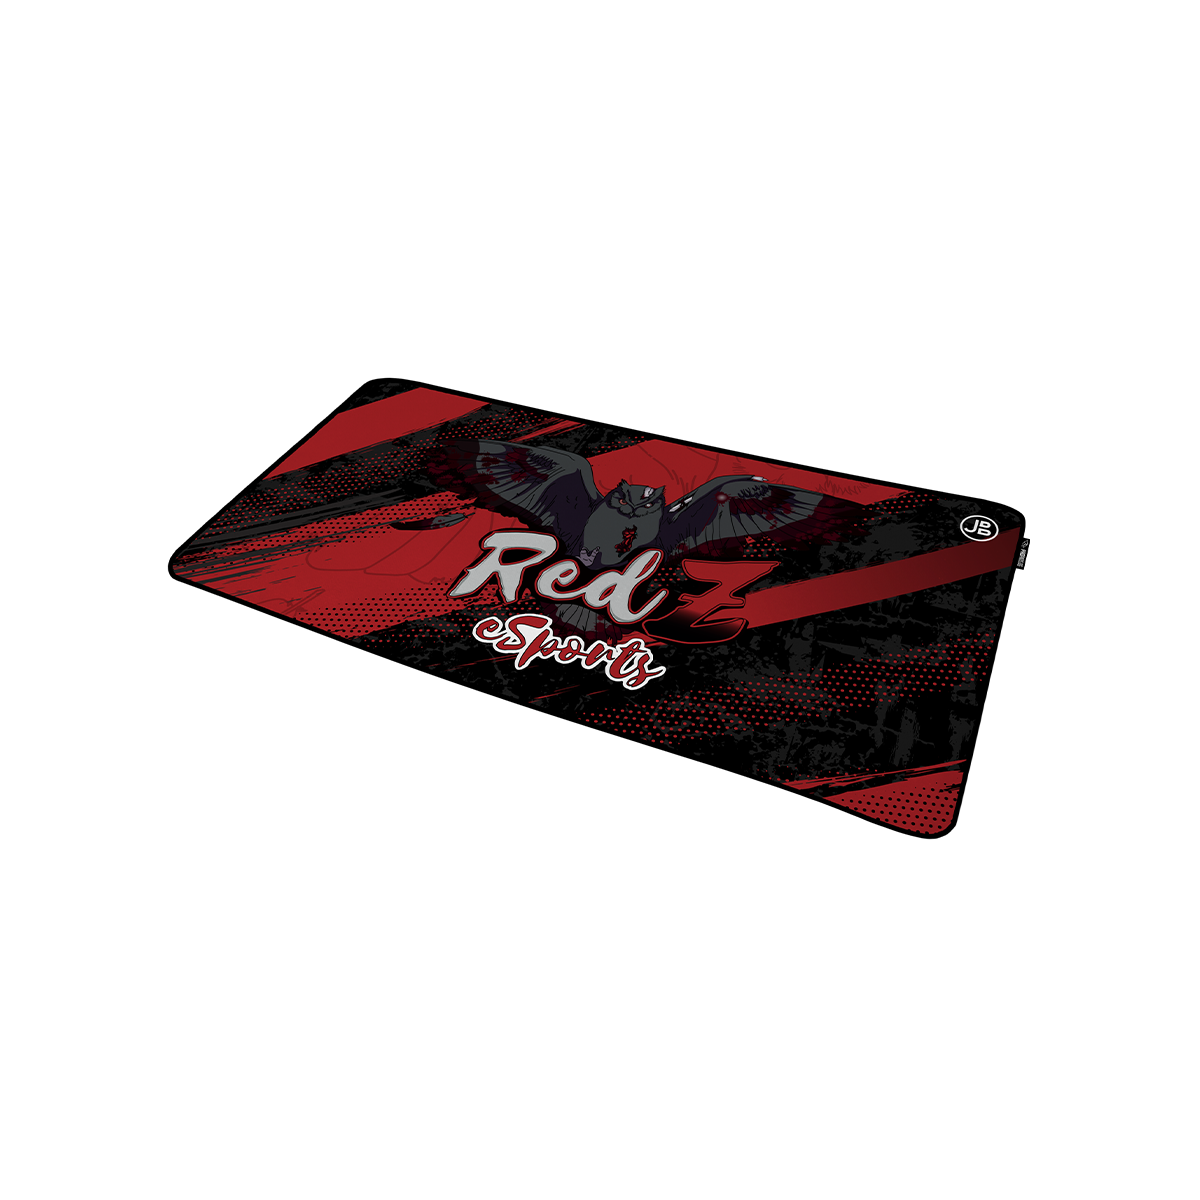 REDZ ESPORTS - Mousepad Red